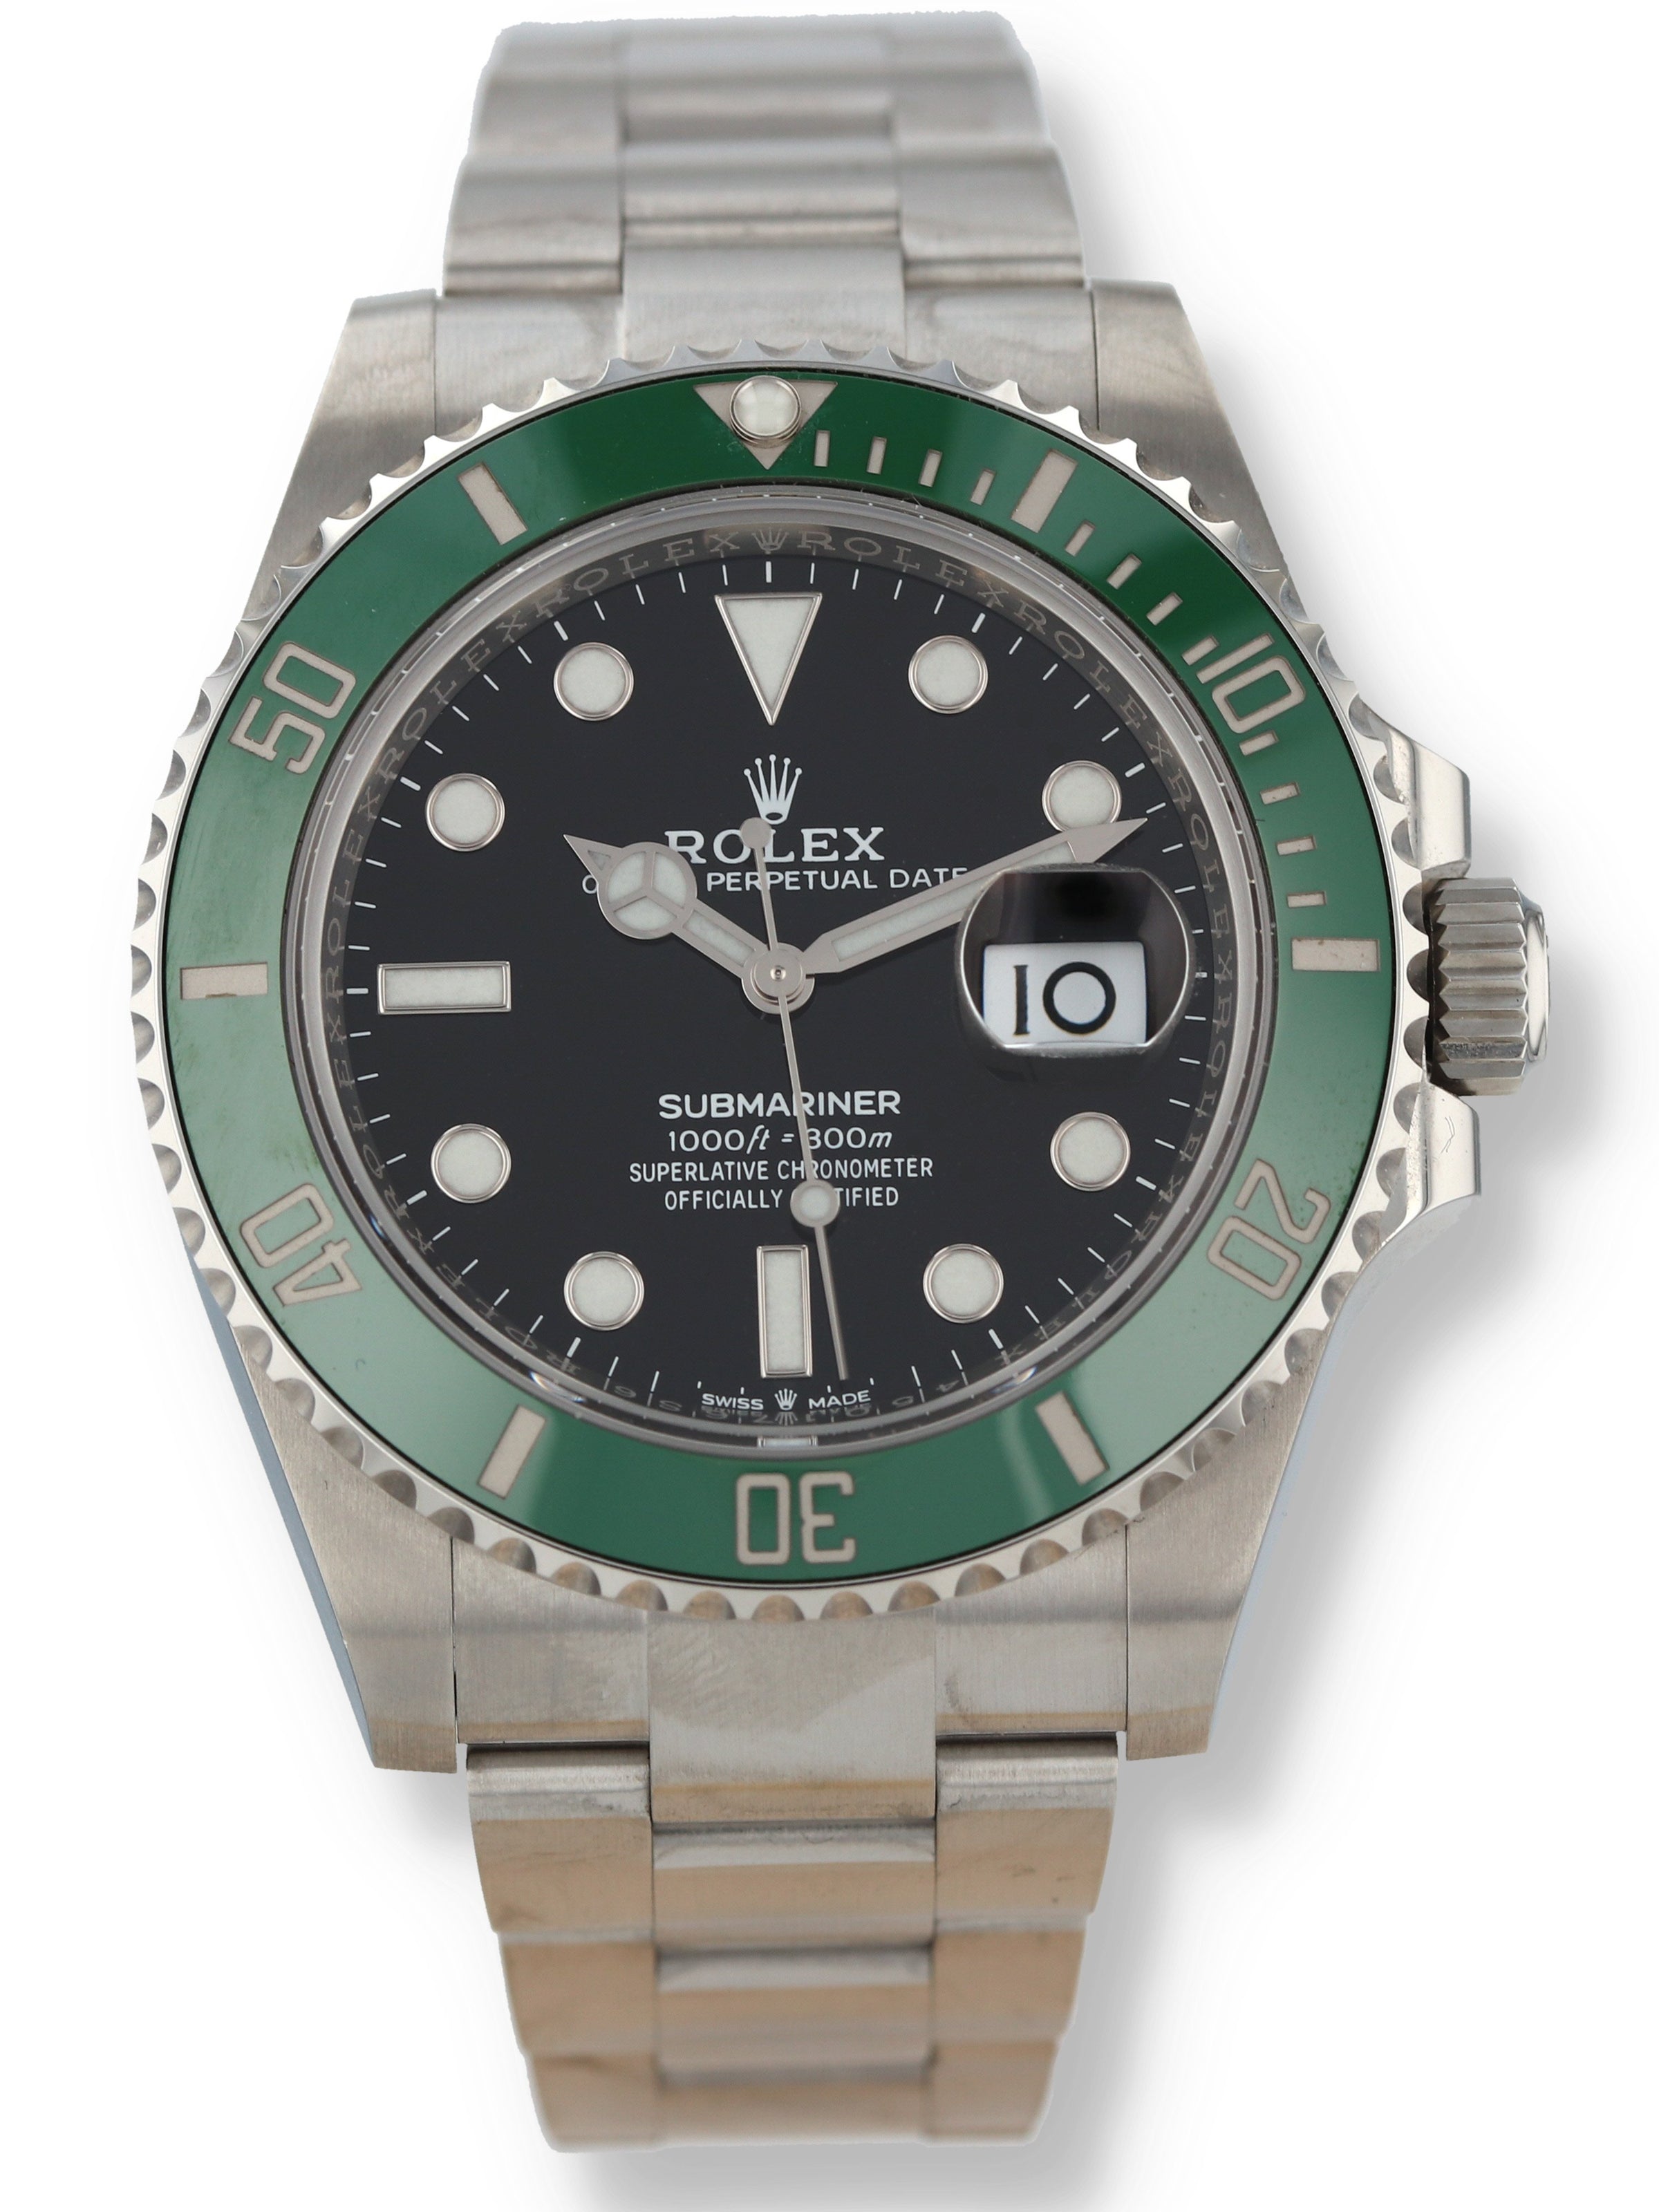 Rolex Submariner Date 126610LV Starbucks / Cermit - Mint condition